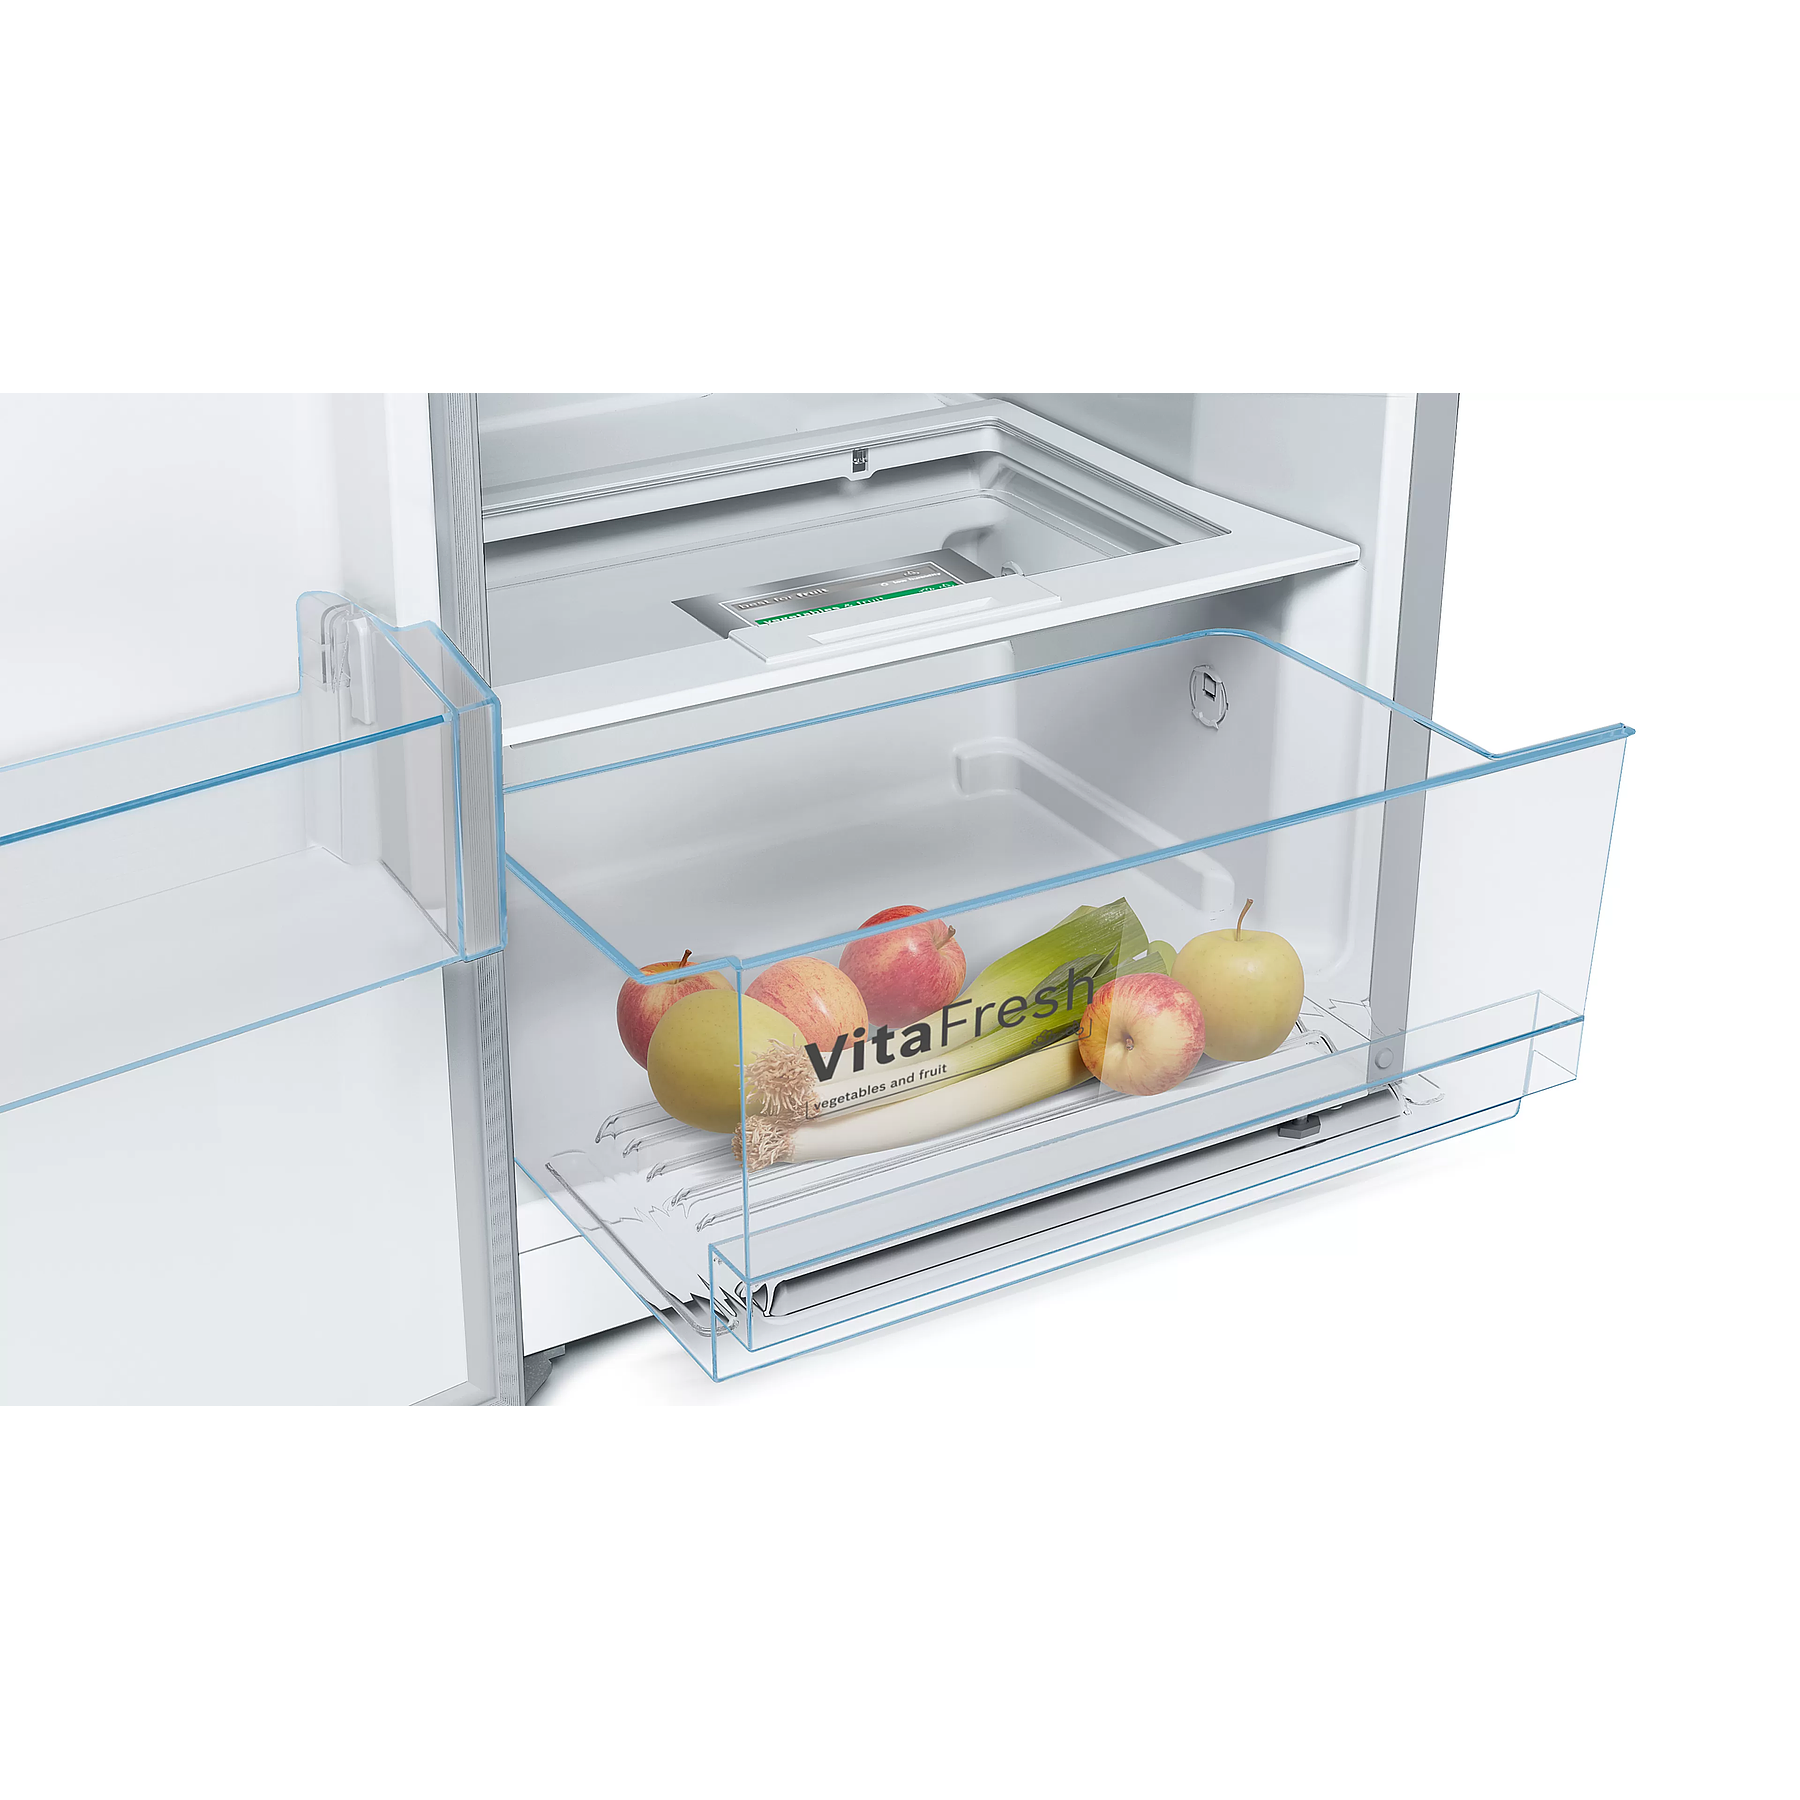 Refrigerador sin Freezer 346 Litros KSV36VLEP